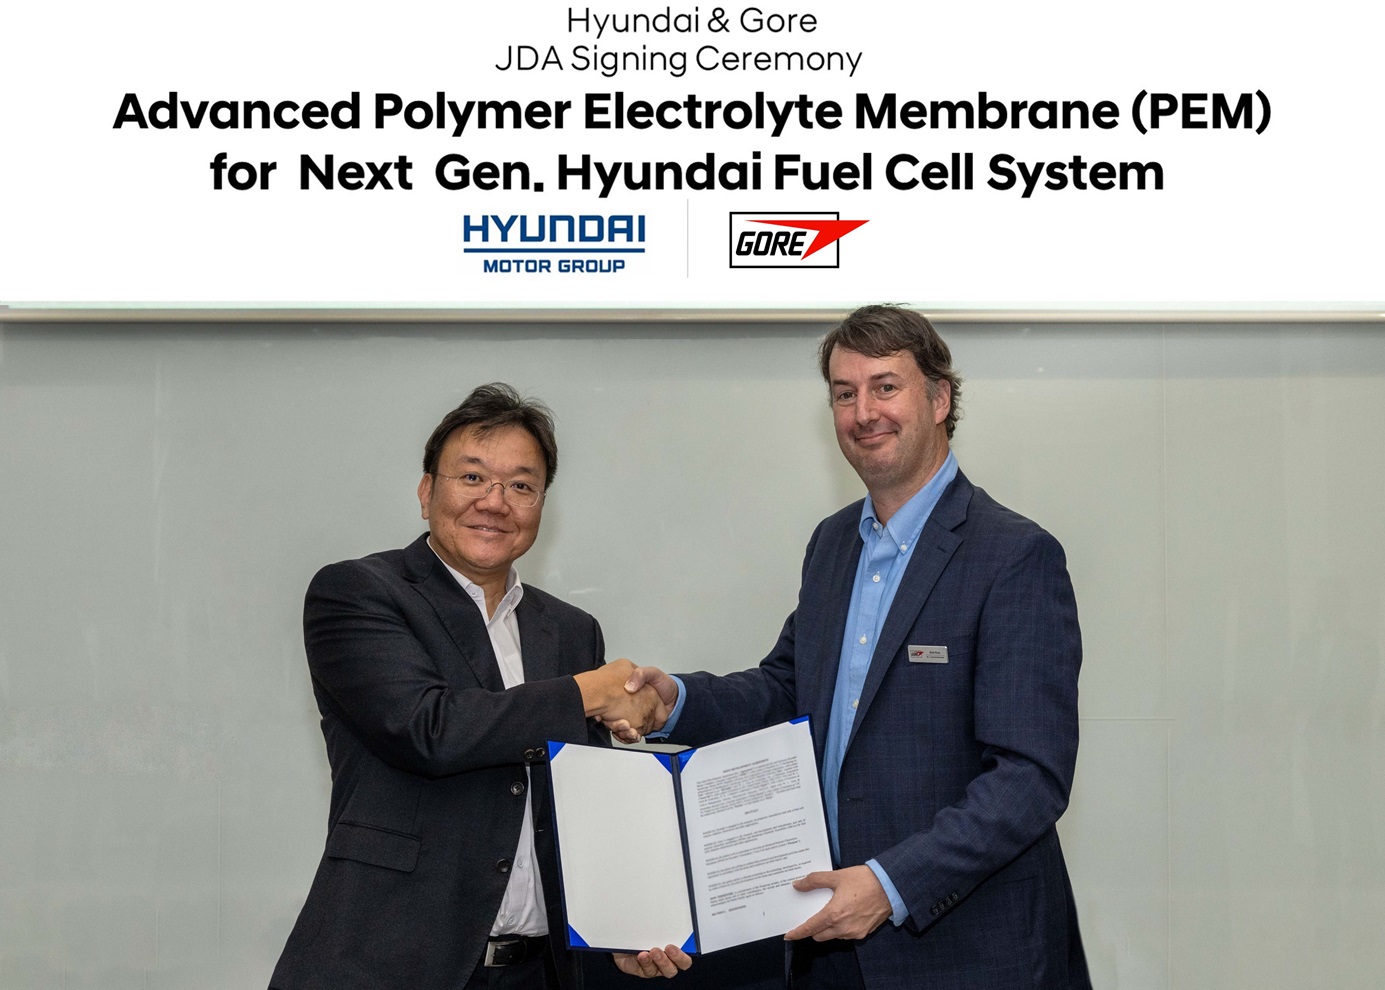 Hyundai e Kia, accordo con Gore per membrane polimeriche elettrolitiche per sistemi di celle a combustibile a idrogeno